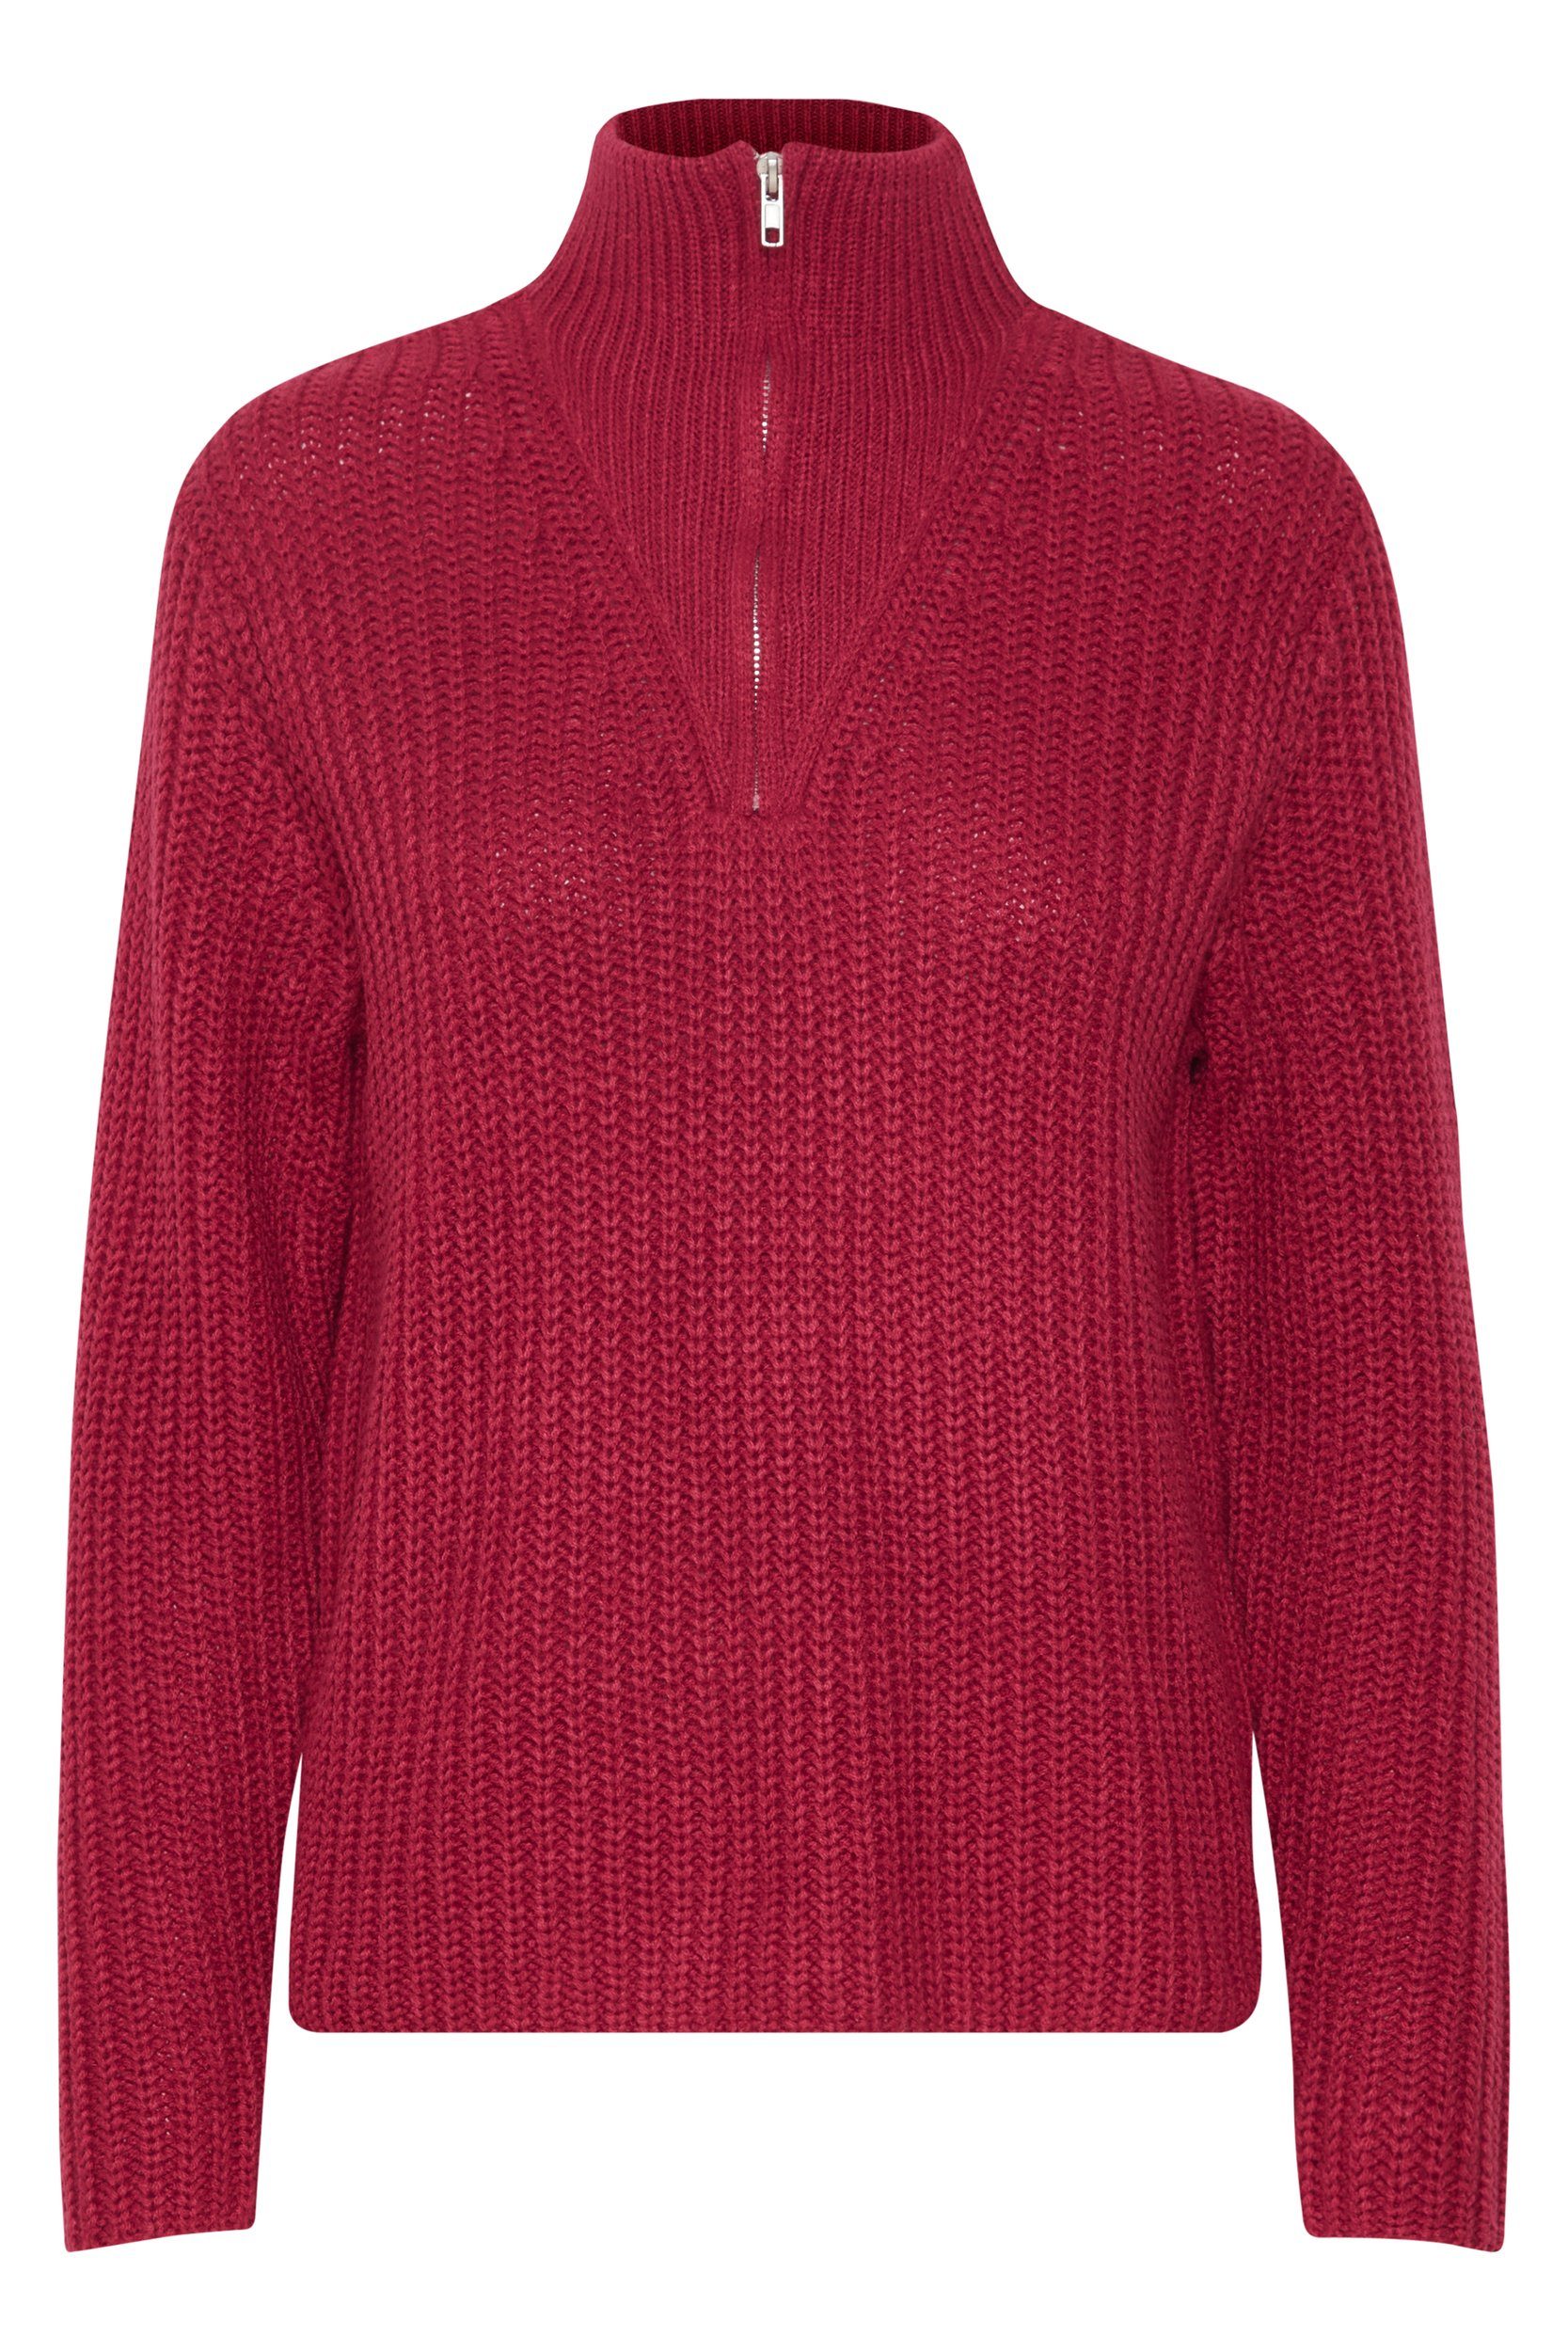 b.young Strickpullover Grobstrick Pullover Troyer Sweater mit Reißverschluss Kragen 6677 in Rot